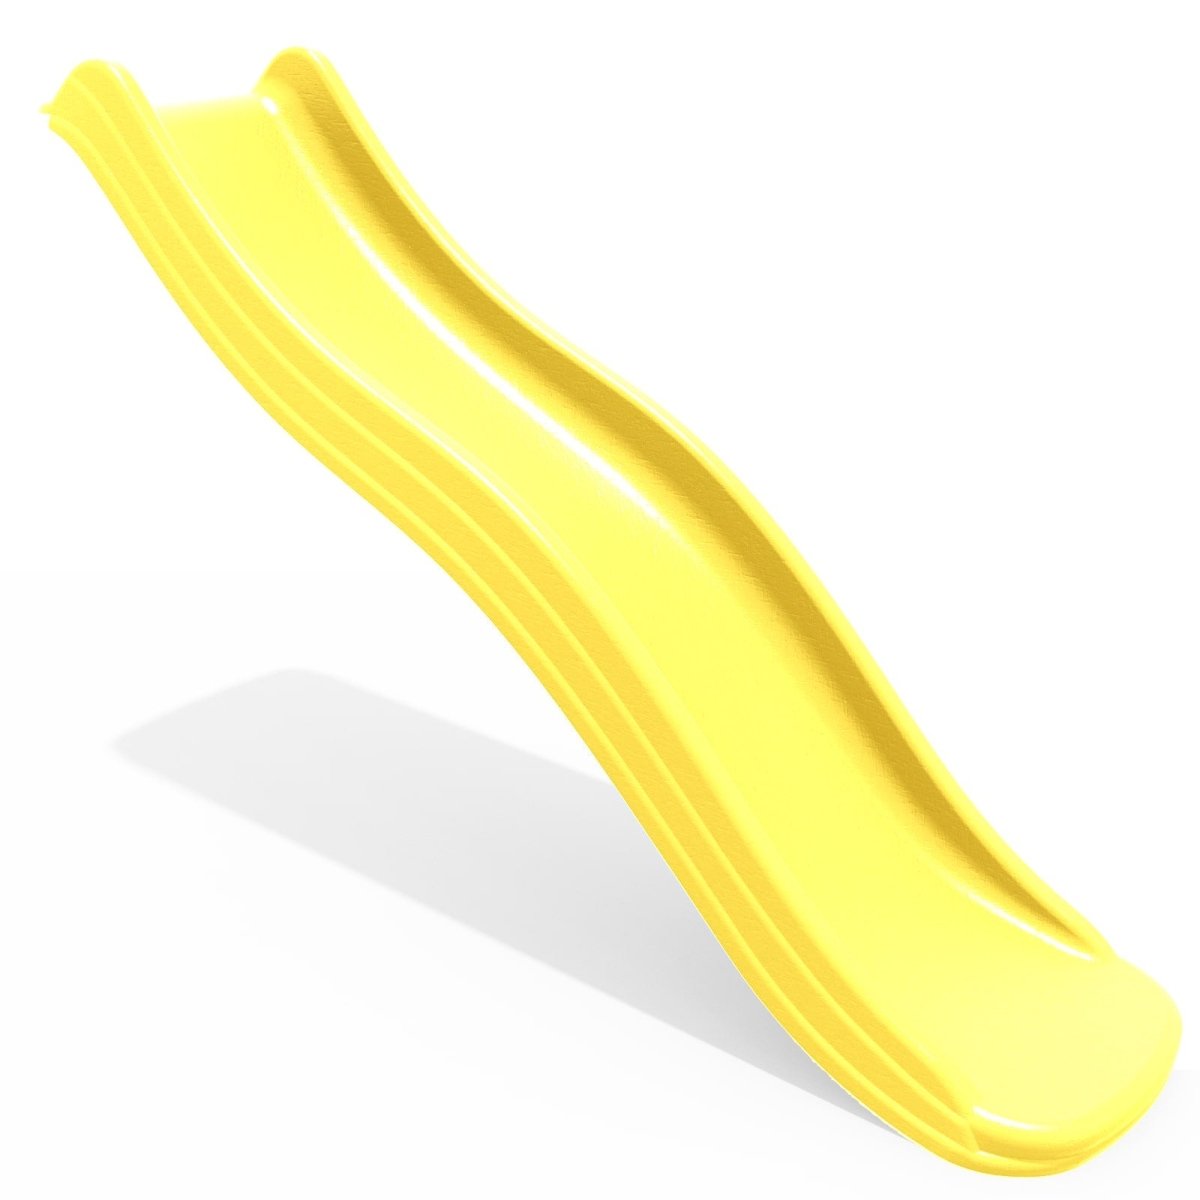 Rebo 6FT (175cm) Universal Children’s Plastic Garden Wave Slides - Yellow